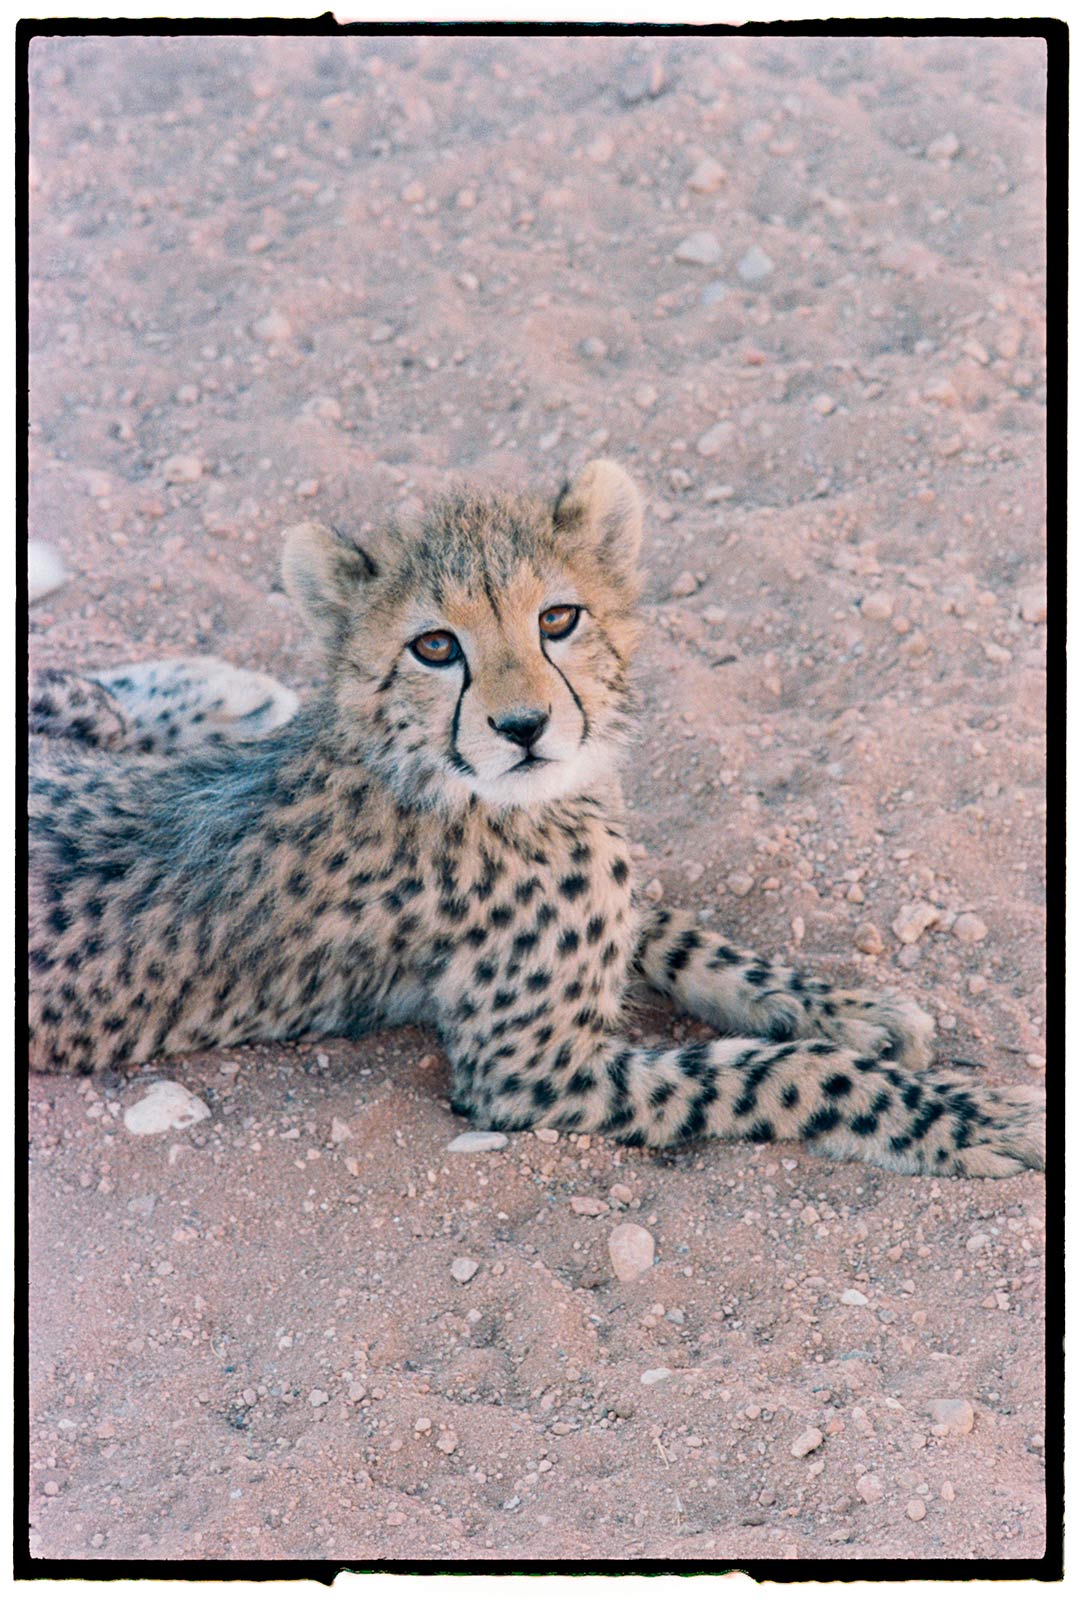 Fotografía de guepardo junior tumbado mirando a cámara.